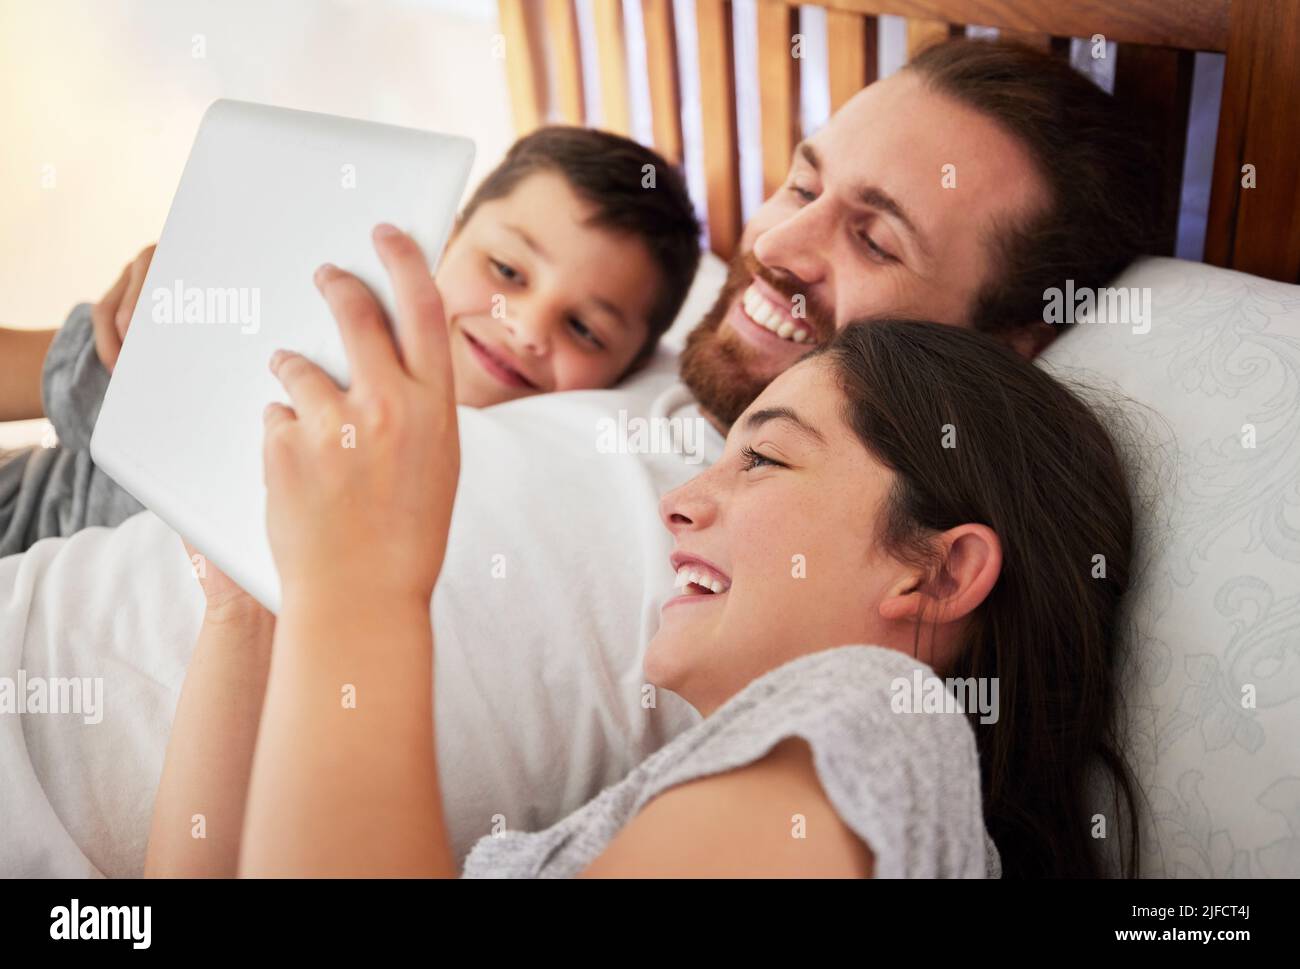 Glücklicher kaukasischer Vater, der mit seinen beiden Kindern im Bett liegt und Filme ansieht, Online-Bücher liest oder zusammen Spiele spielt Stockfoto